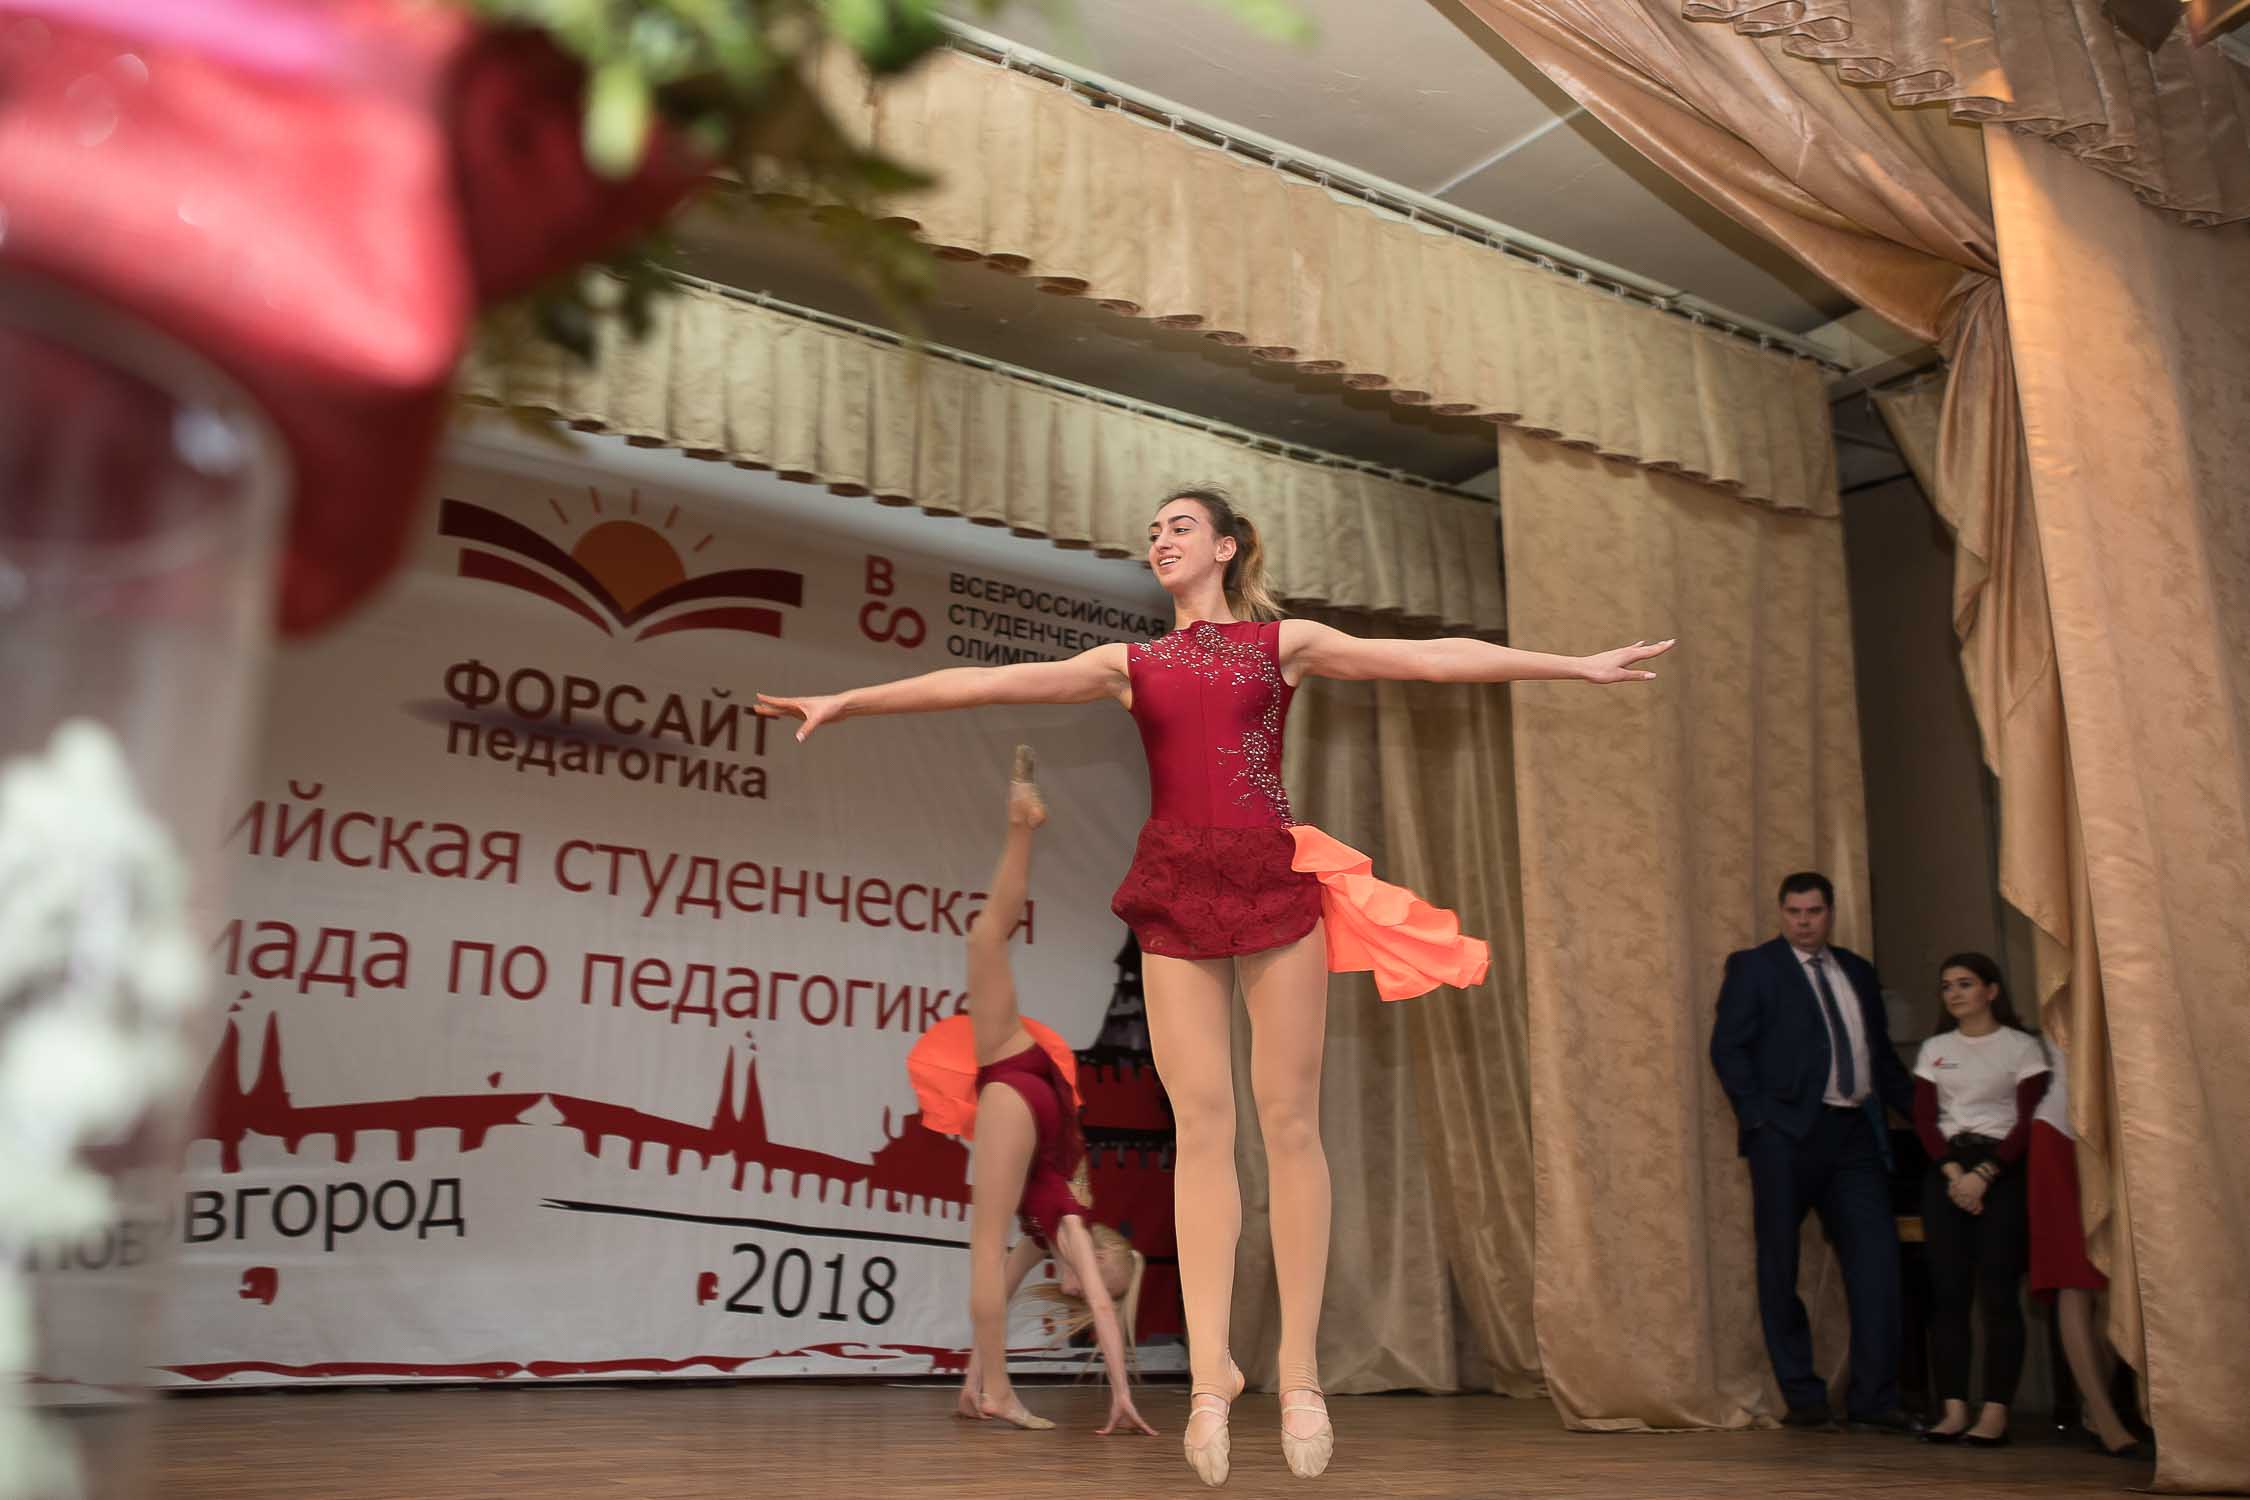 Всероссийская студенческая олимпиада «ФОРСАЙТ-ПЕДАГОГИКА» торжественно завершила свою работу